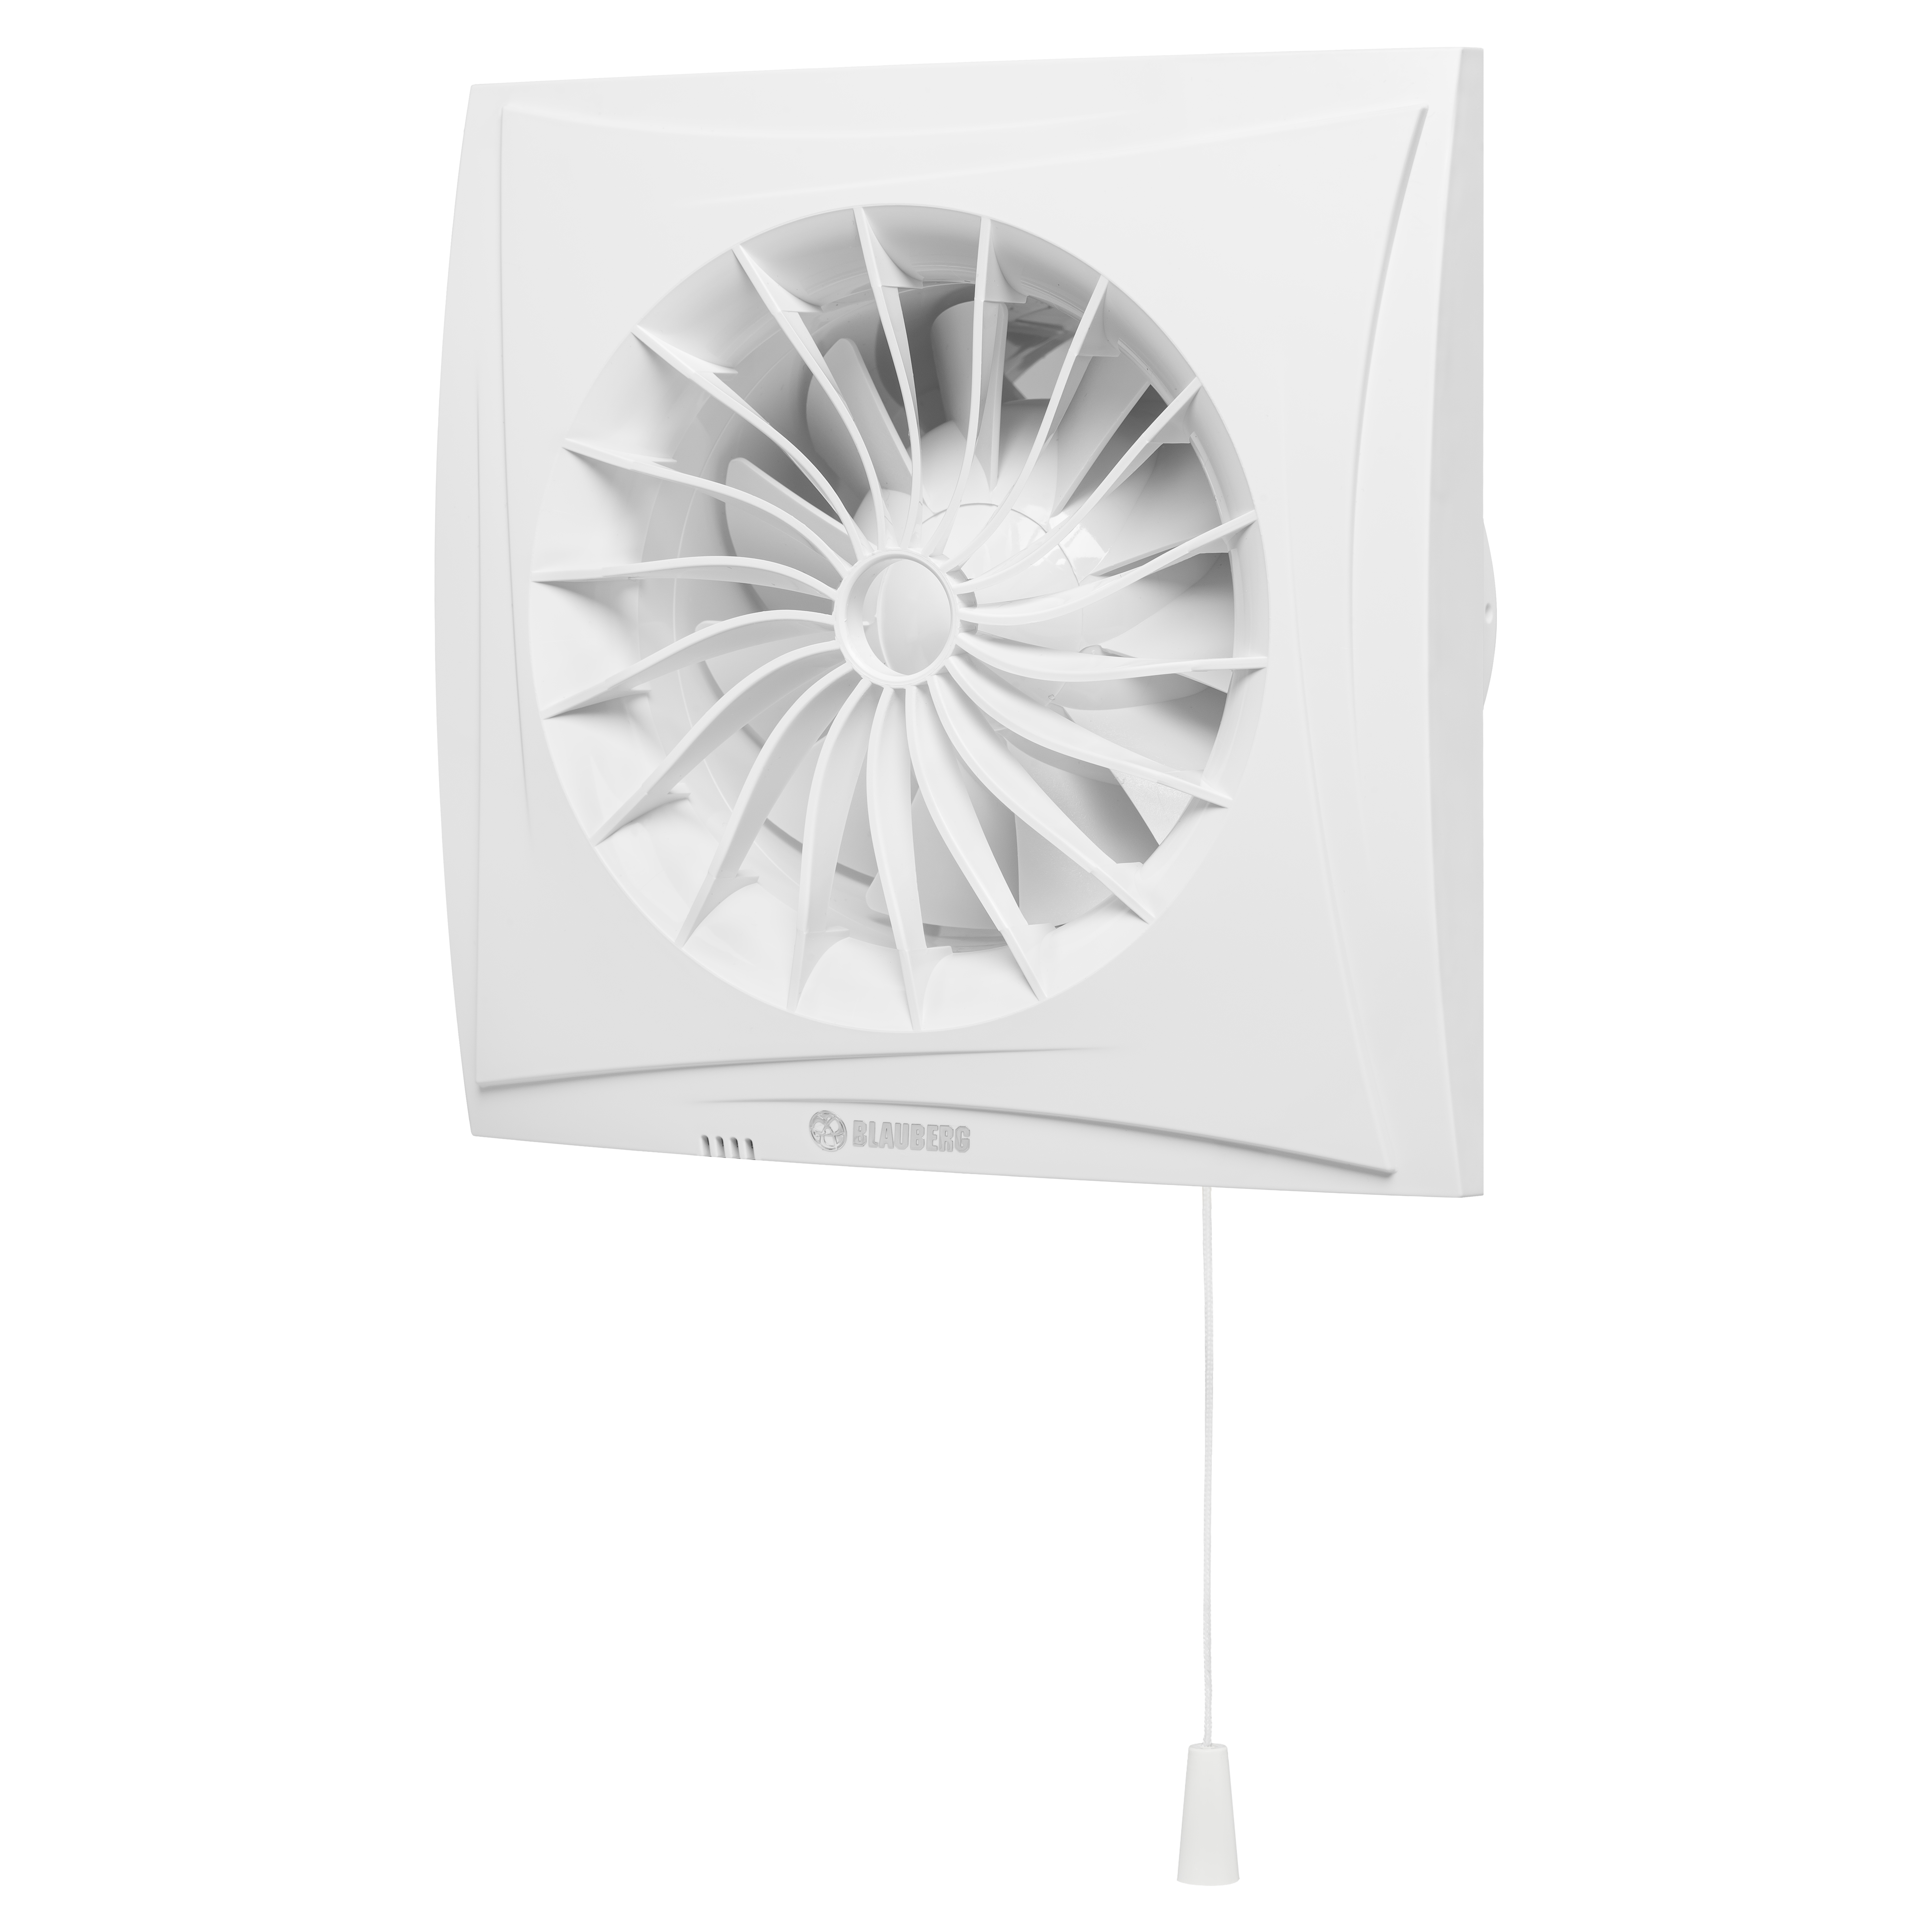 Вытяжной вентилятор Blauberg Sileo 100 ST в интернет-магазине, главное фото